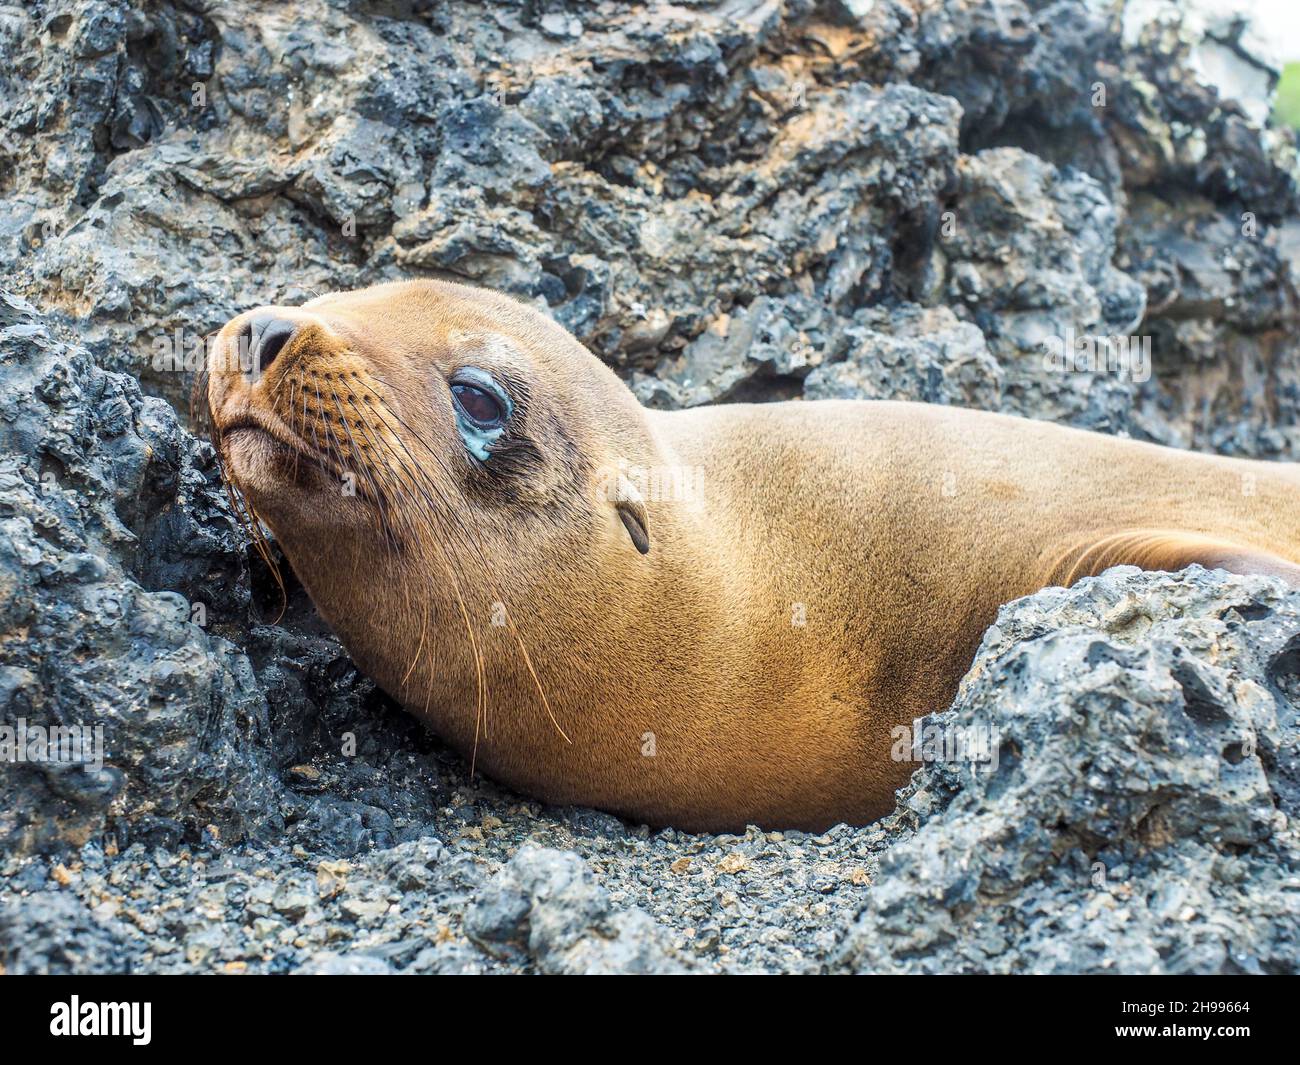 Bébé lion de mer.Mignon petit lion de mer reposant sur la côte rocheuse du parc national des îles Galapagos.Animal sauvage avec des yeux malades, des yeux qui s'attarissent Banque D'Images